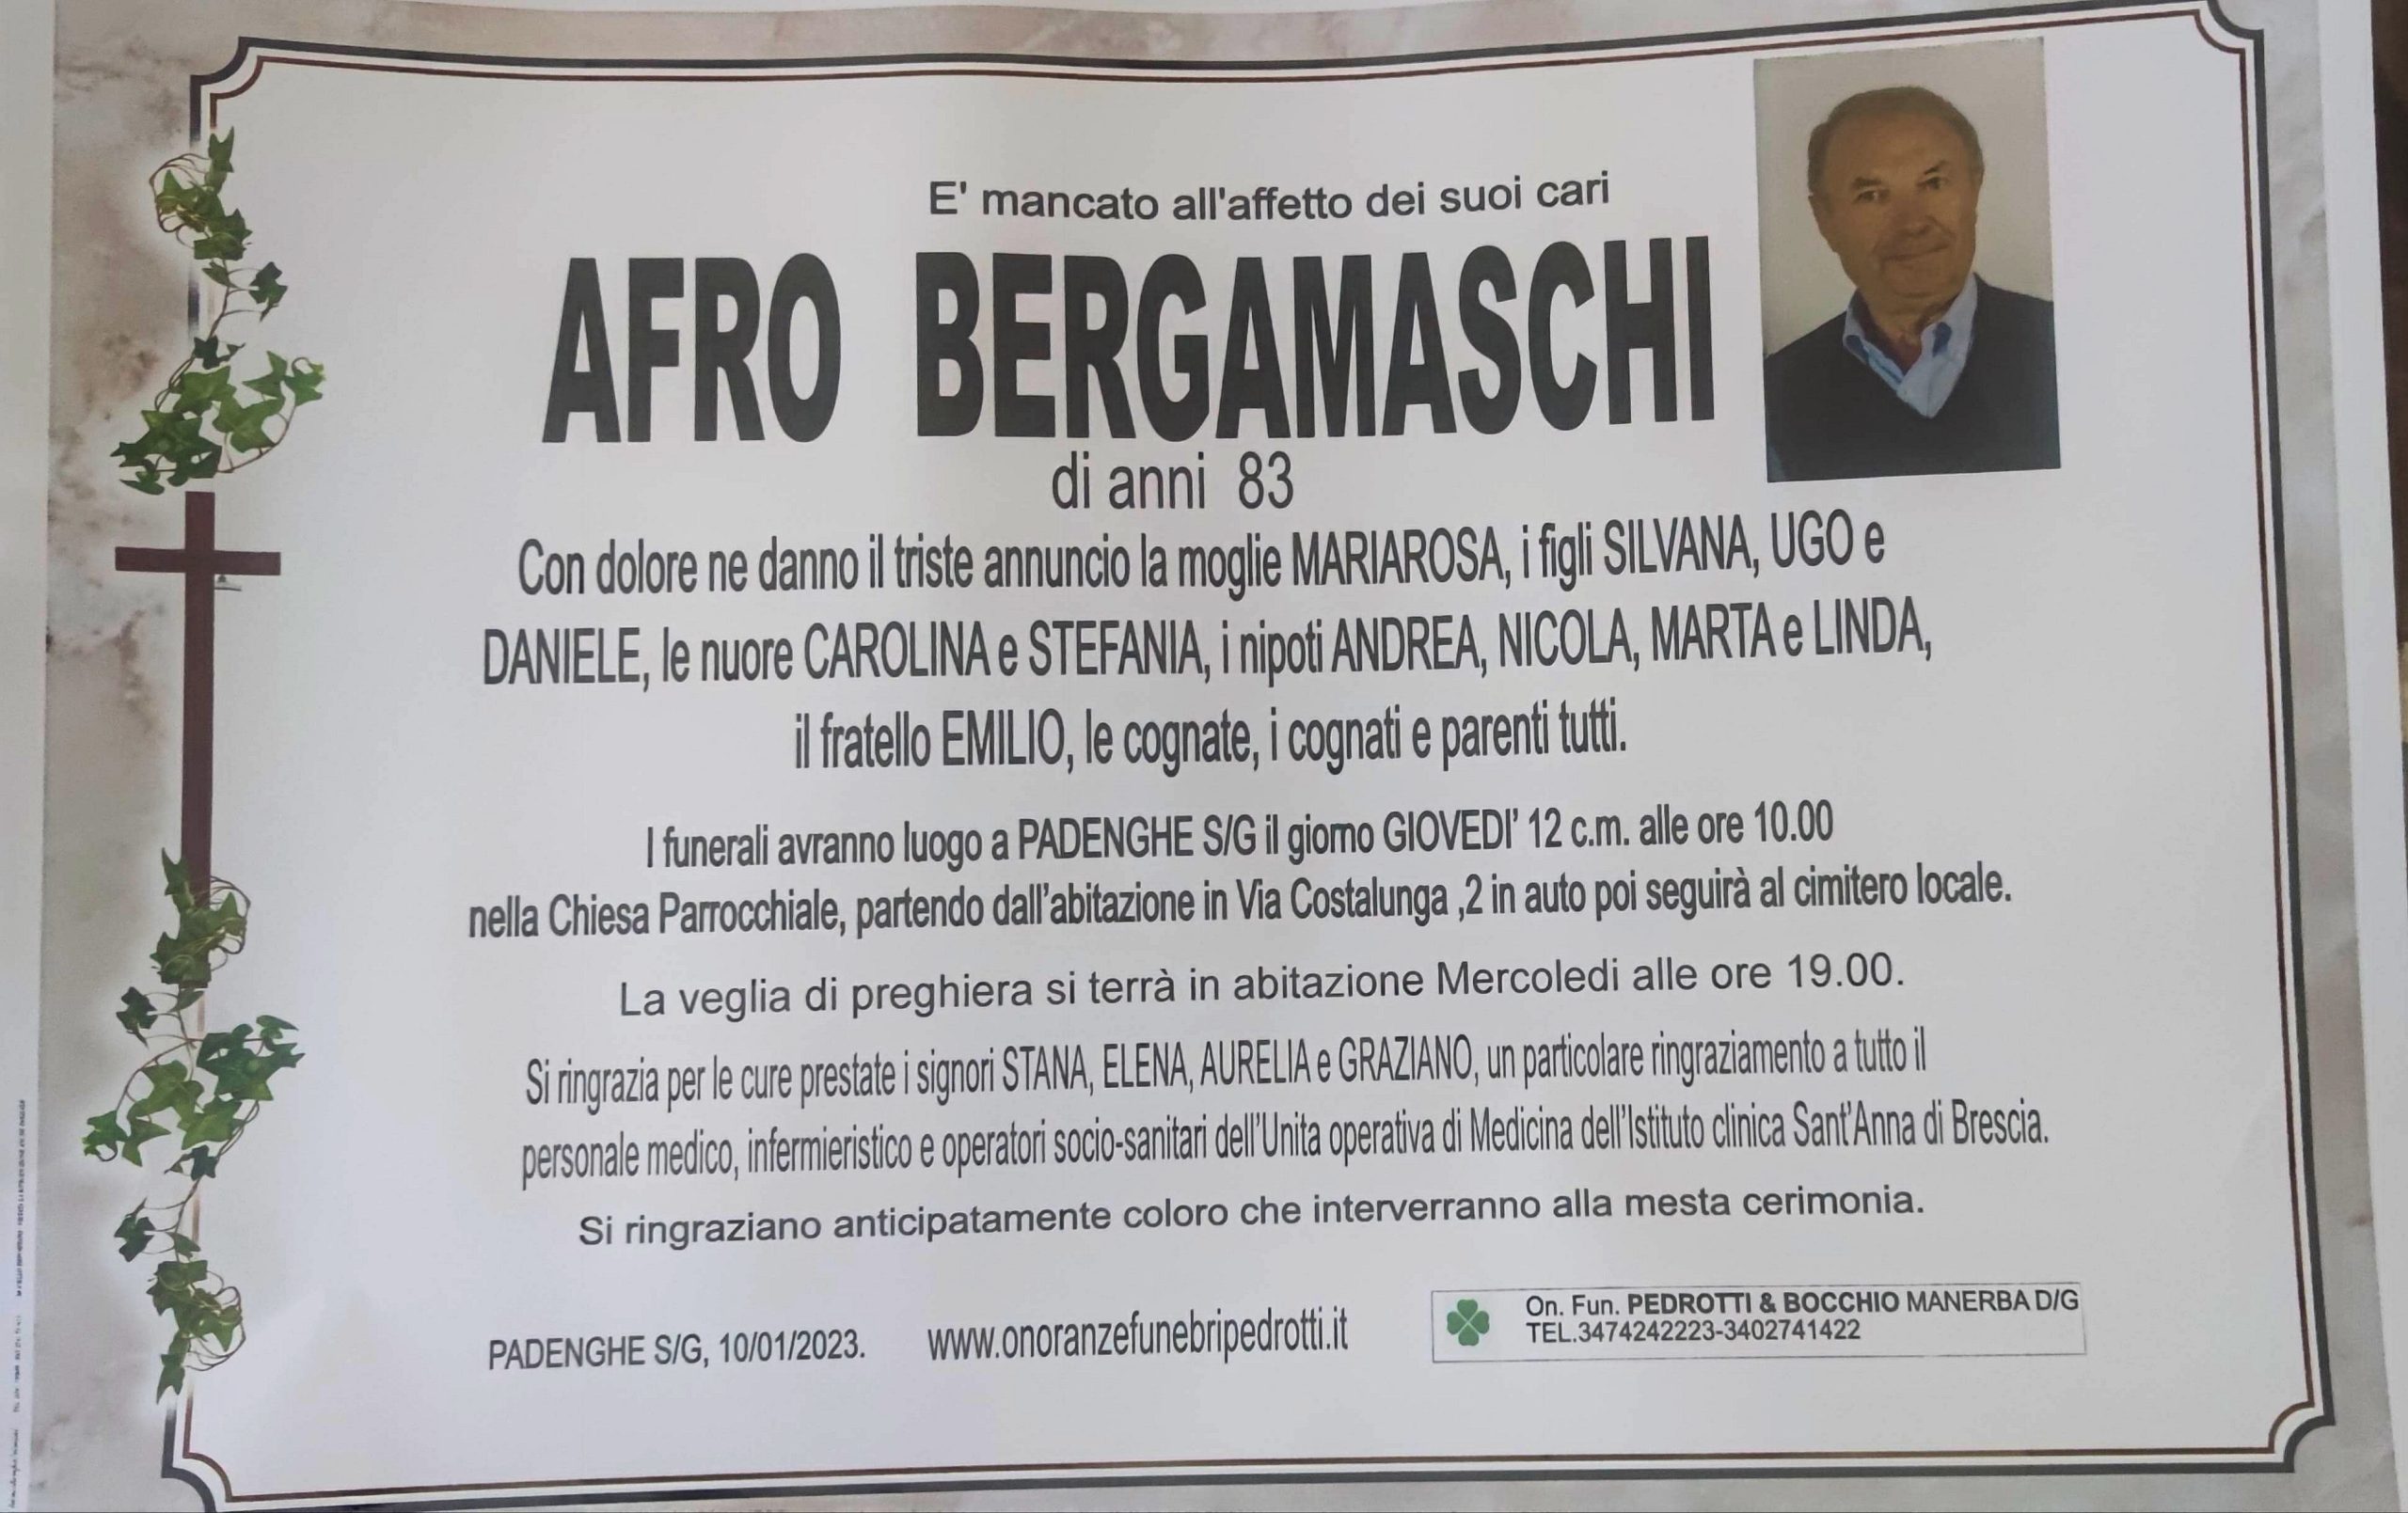 Al momento stai visualizzando Bergamaschi Afro